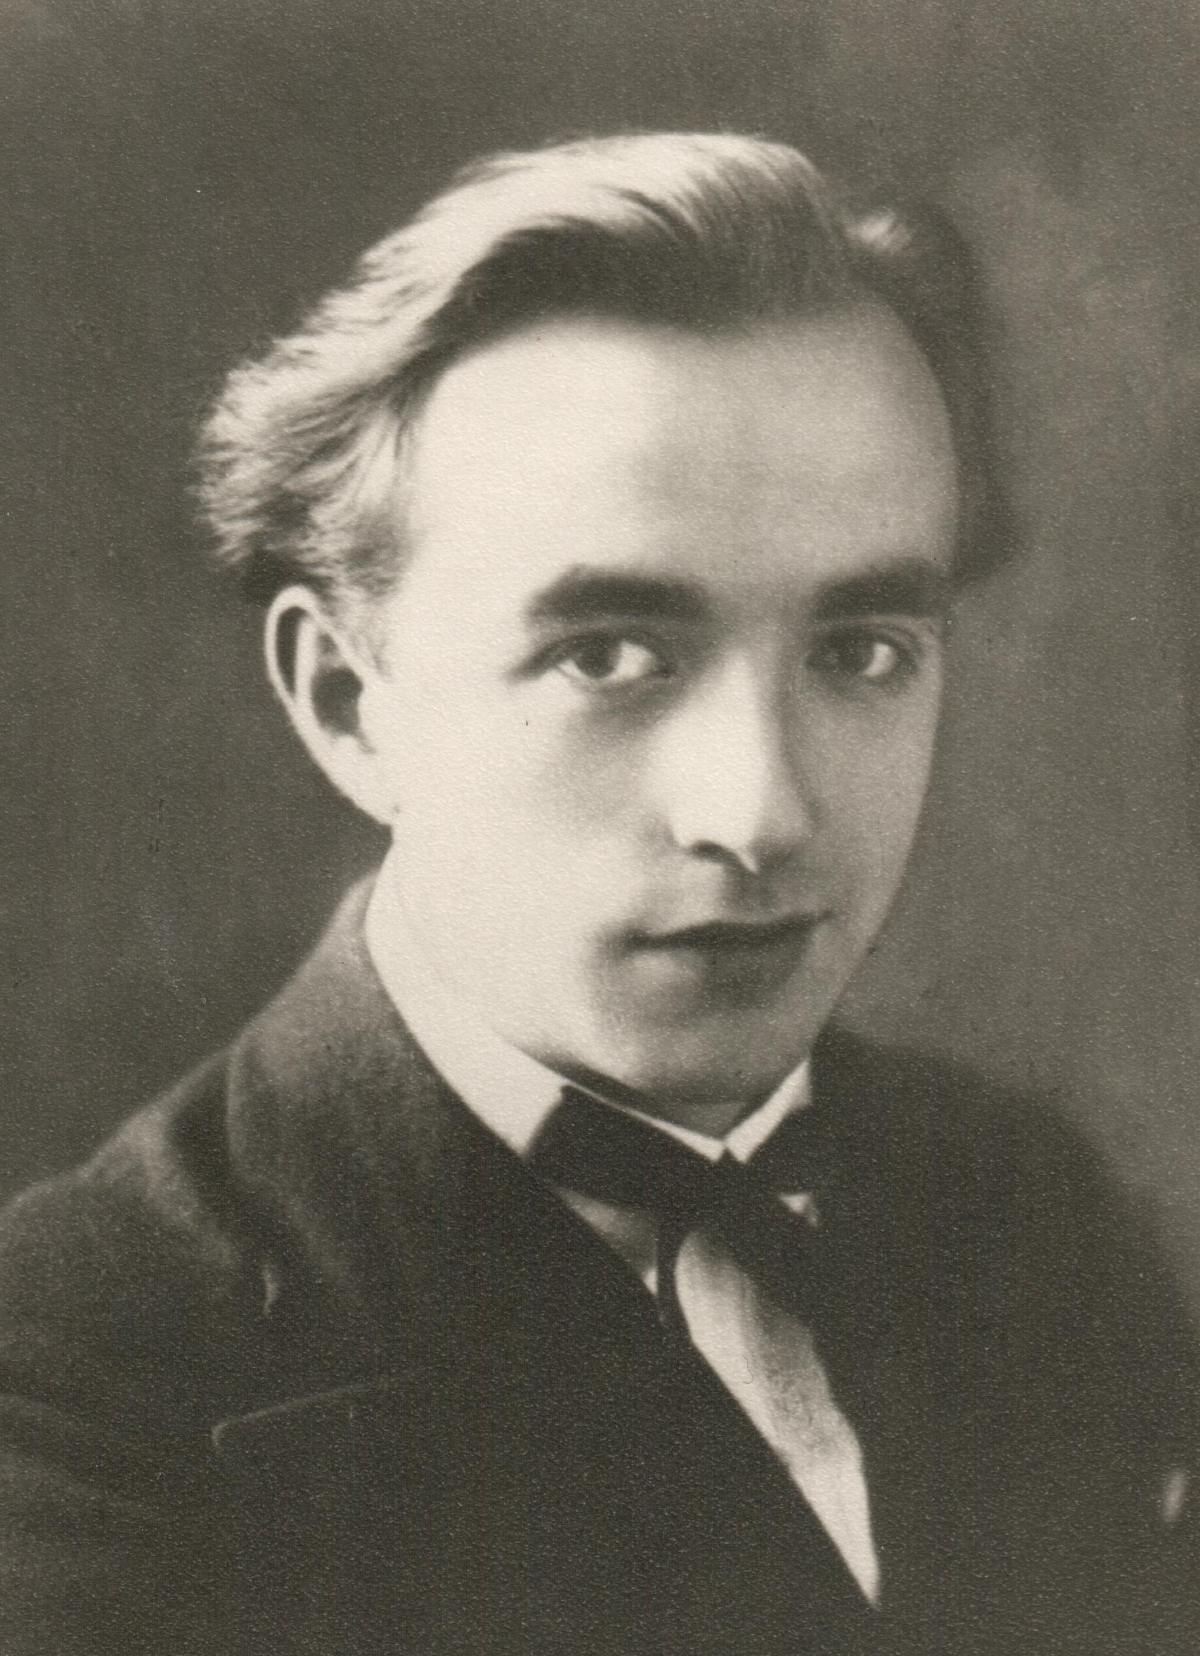 Wilhelm Paul Kempa